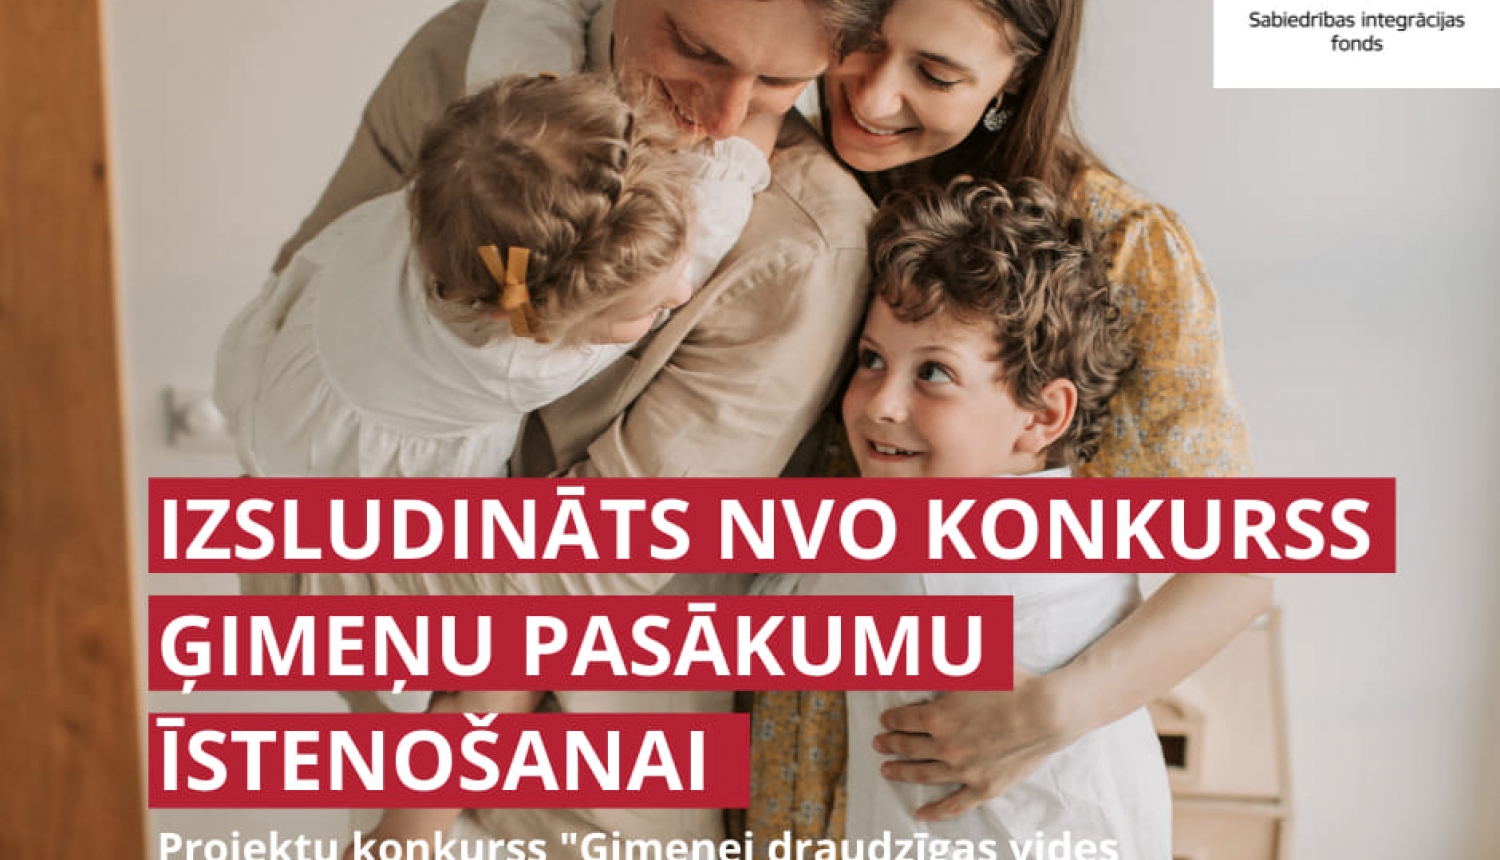 Izsludināts NVO projektu pieteikumu konkurss ģimenes pasākumu atbalstam 170 000 EUR vērtībā